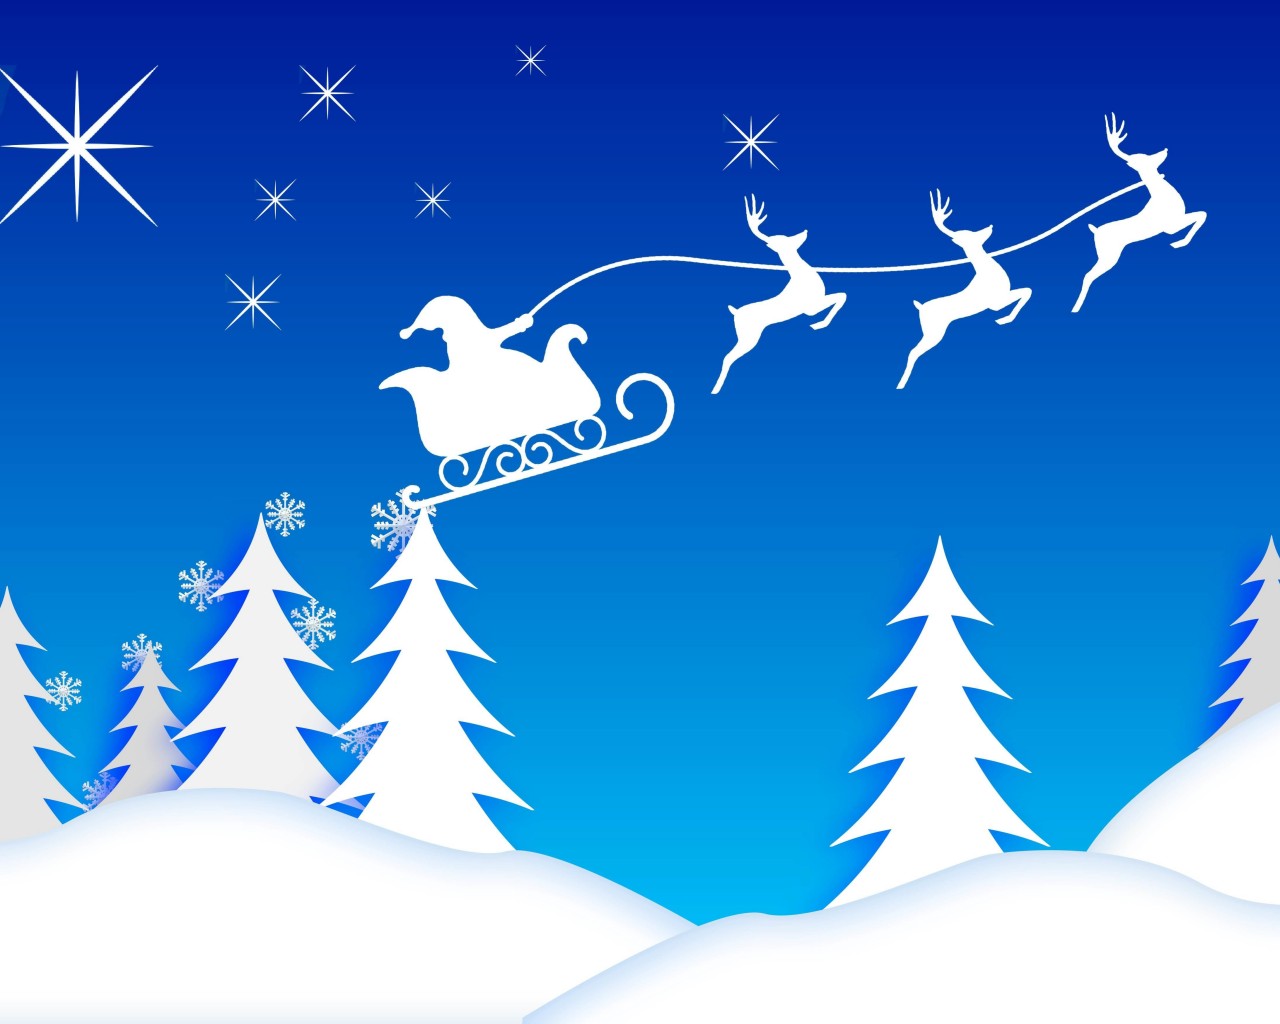 Santa’s Sleigh Illustration Wallpaper for Desktop 1280x1024